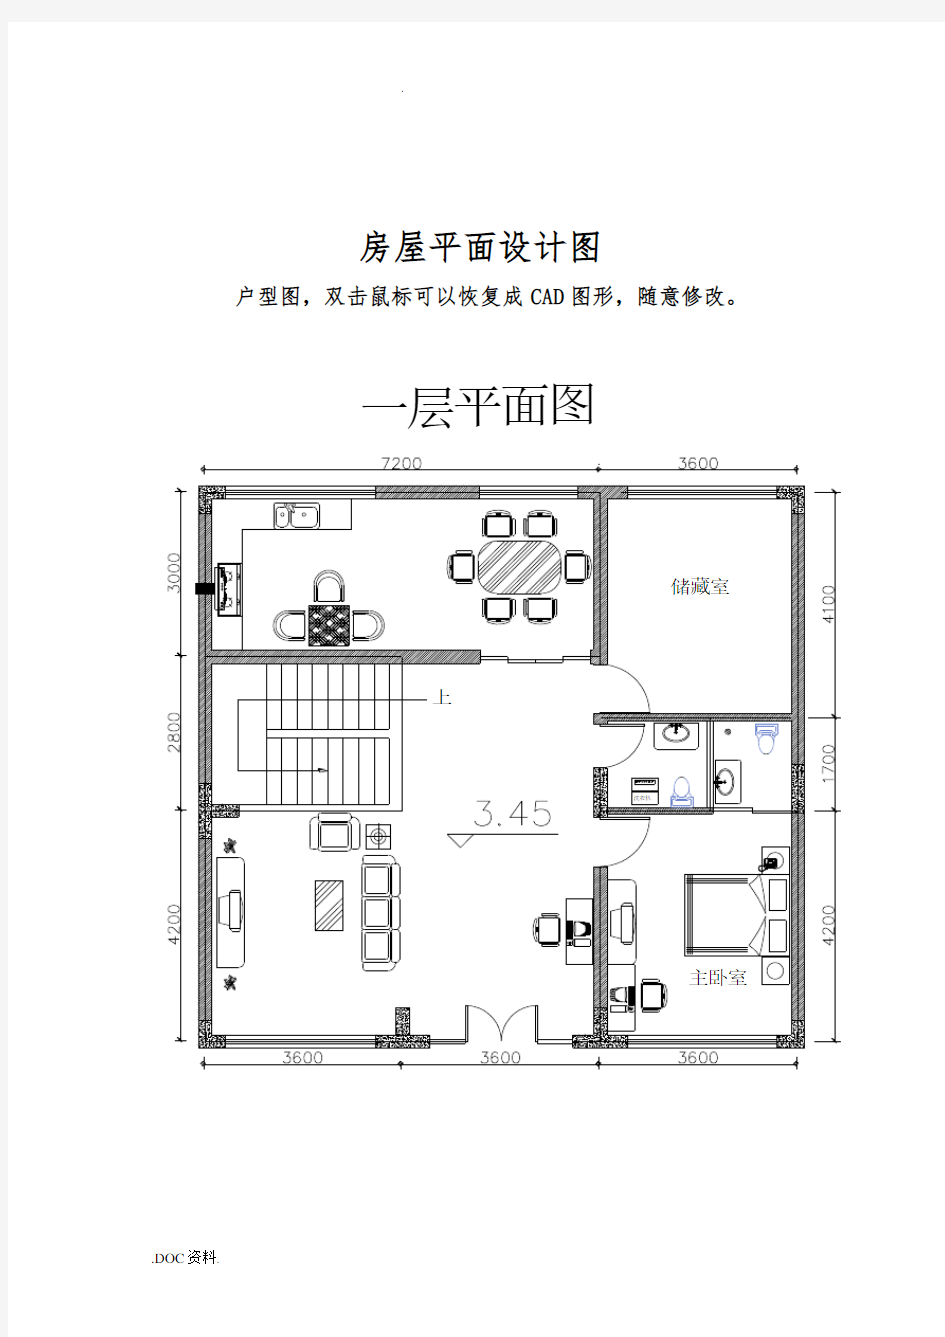 房屋设计平面图CAD图